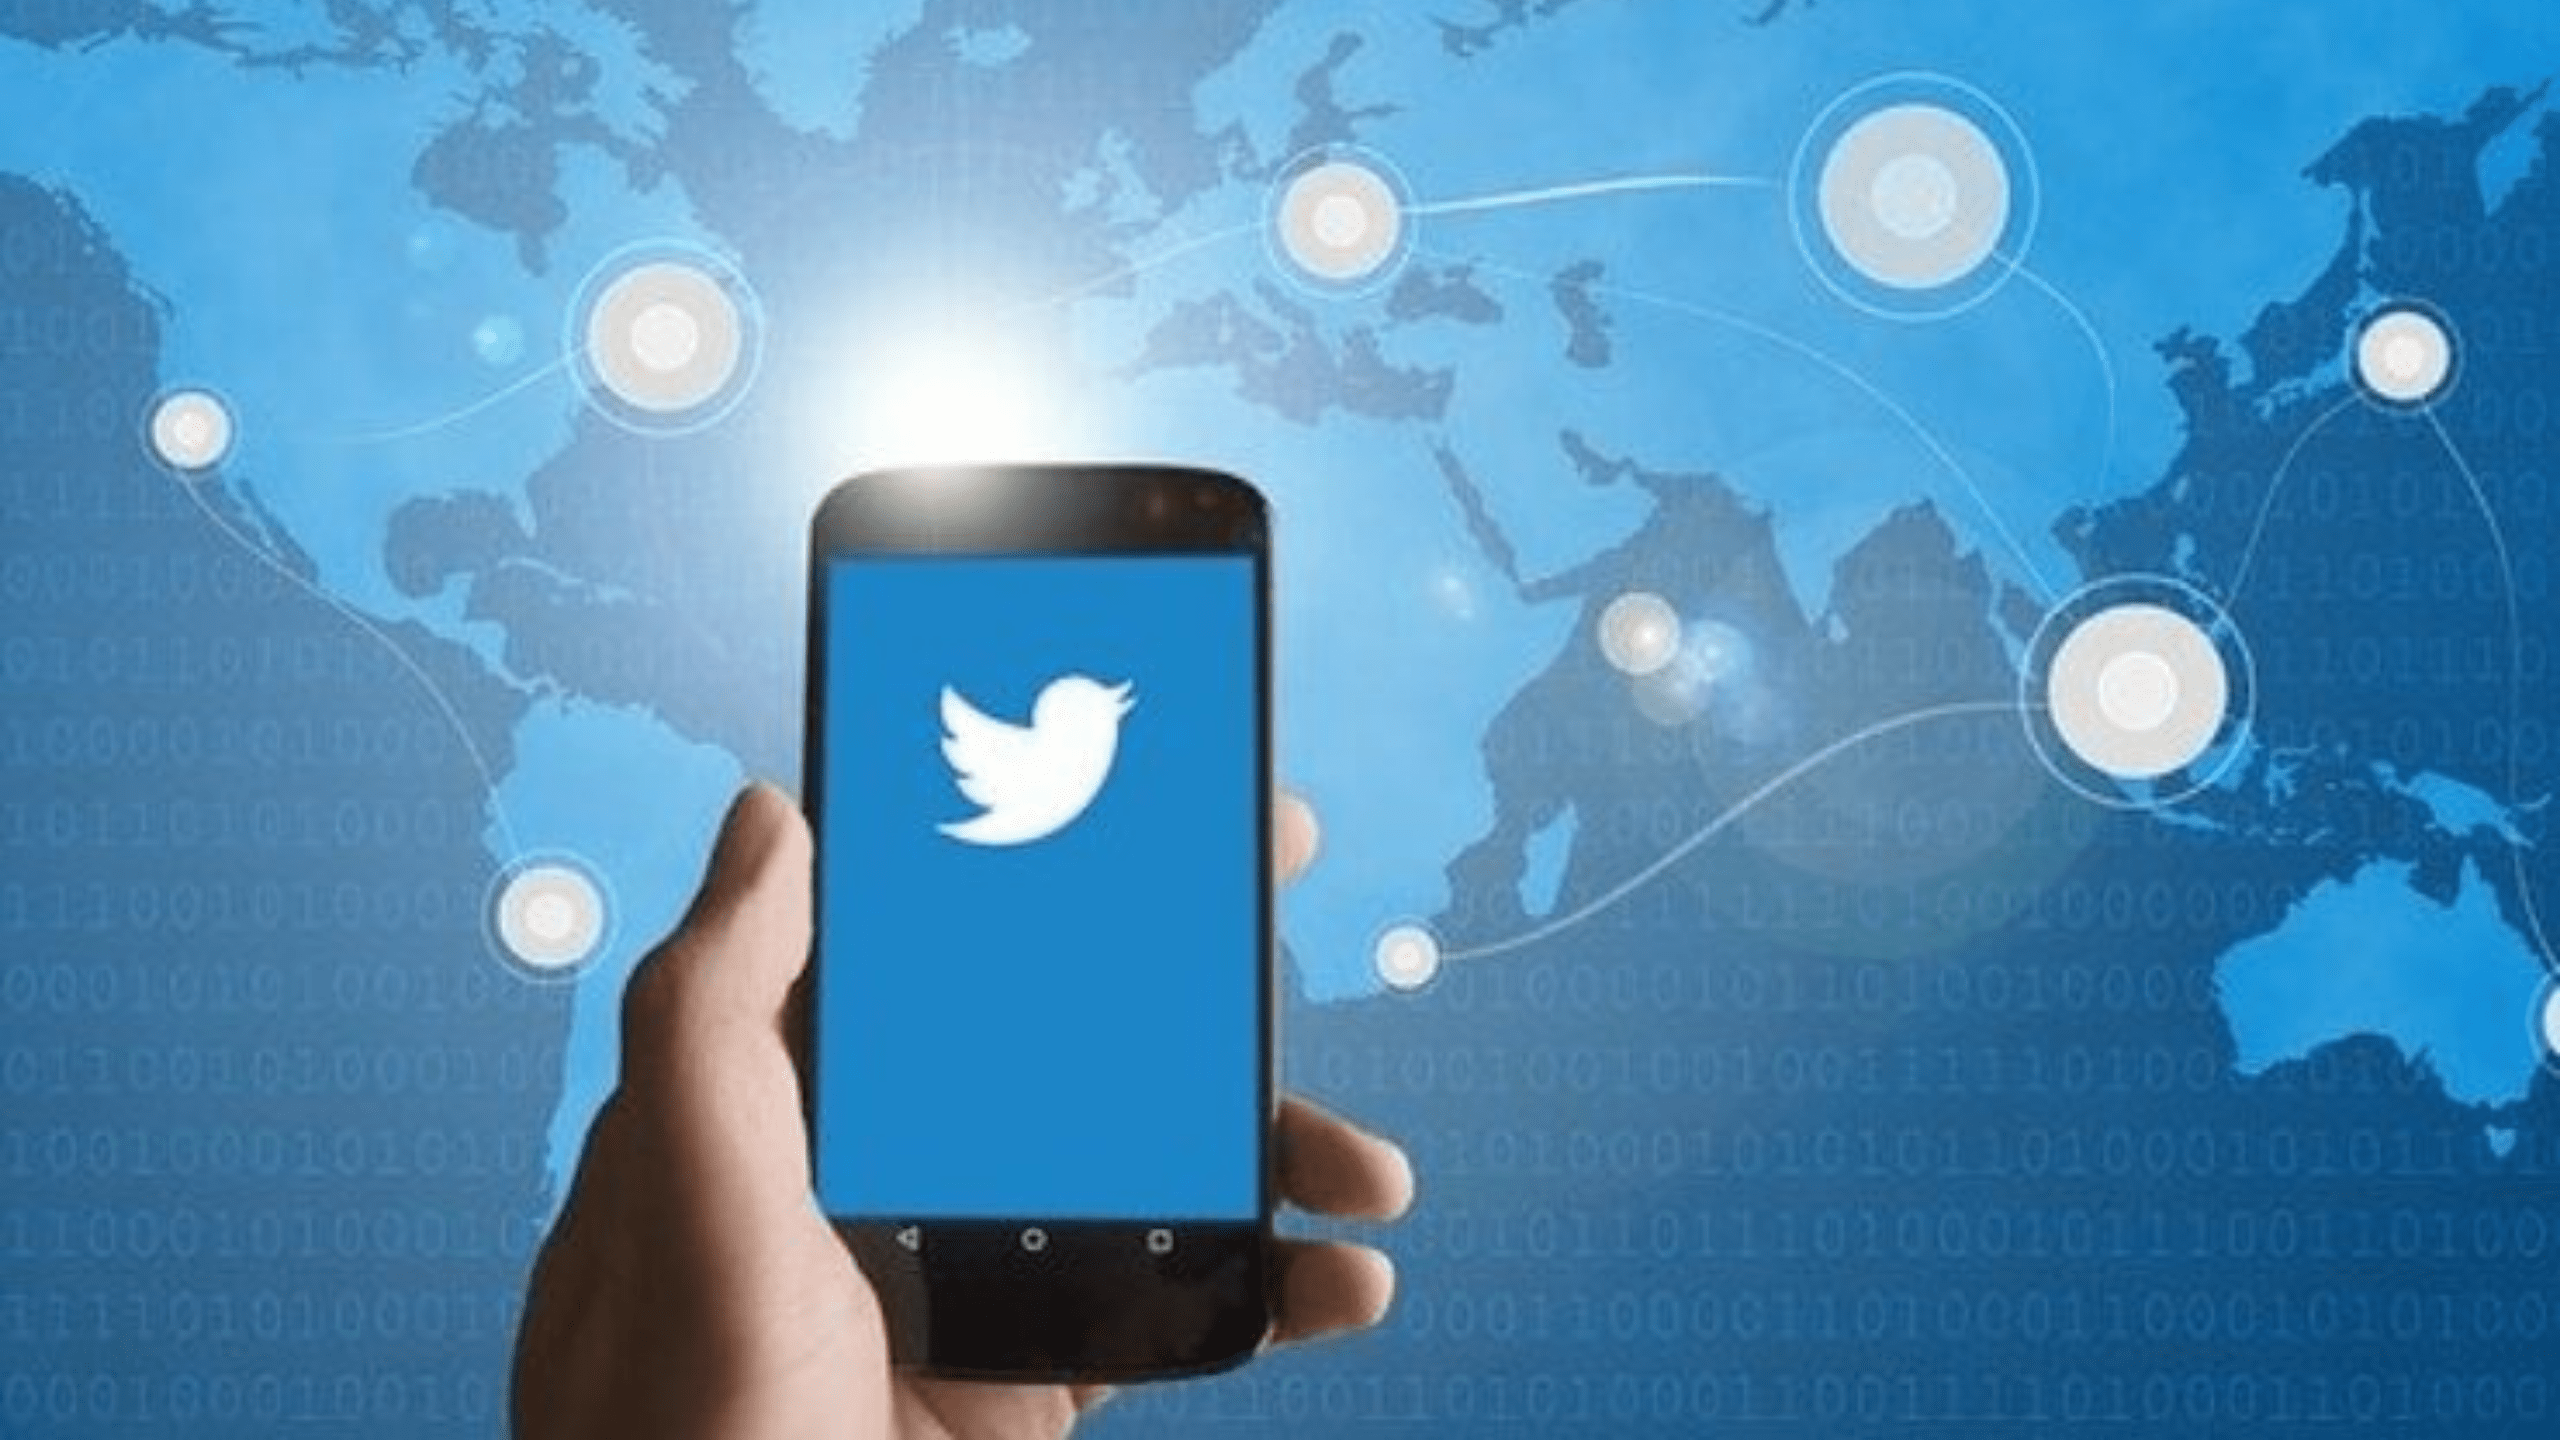 تويتر يقتحم سوق الإعلانات الرقمية العالمية بإطلاق خاصية Super Follows المدفوعة